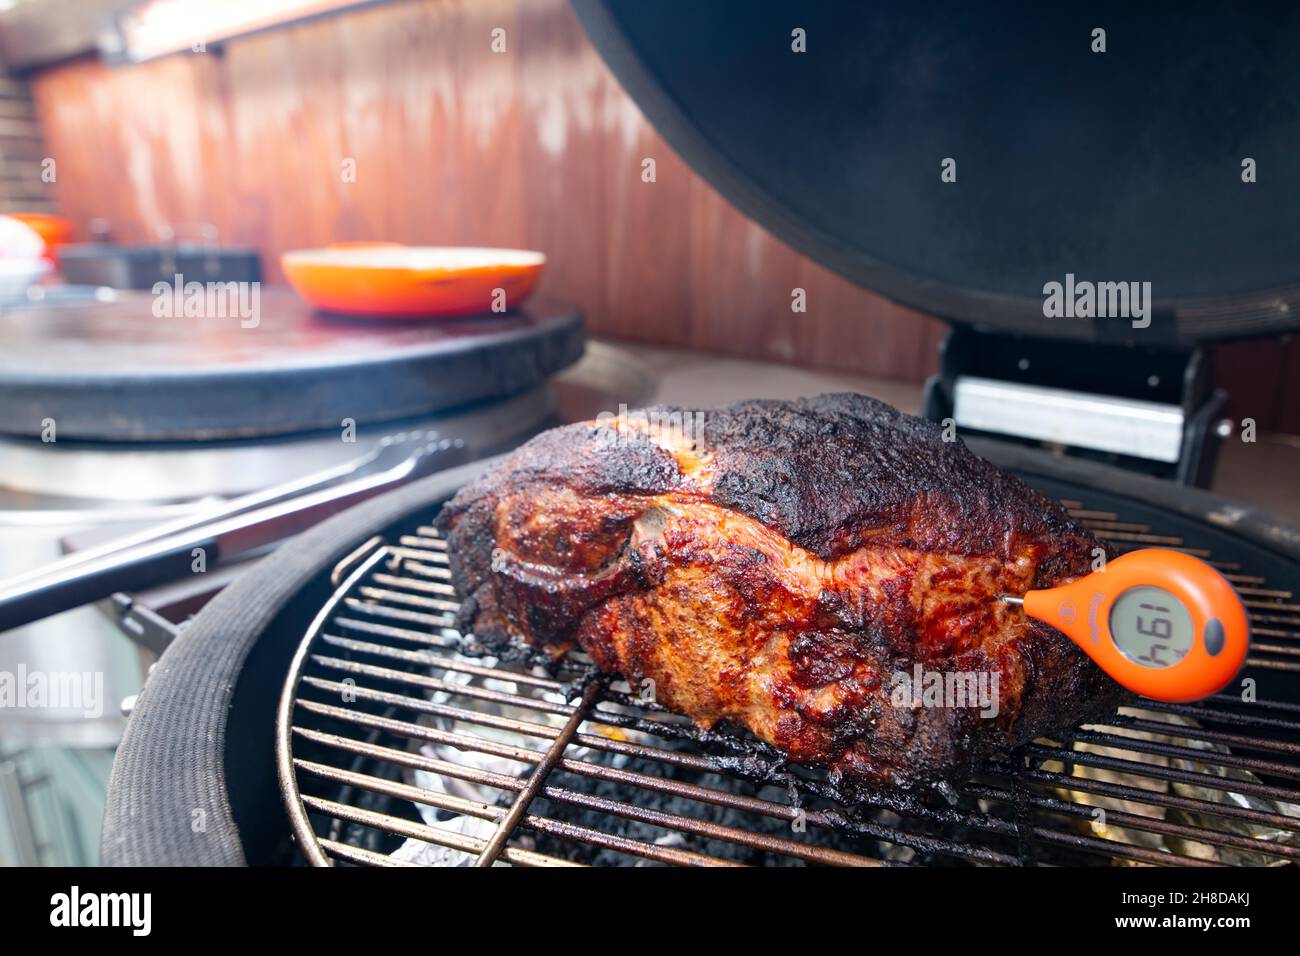 Cucina esterna fumatore e grill piano cottura di un culo di maiale o spalla utilizzando un termometro a carne per controllare la temperatura interna Foto Stock